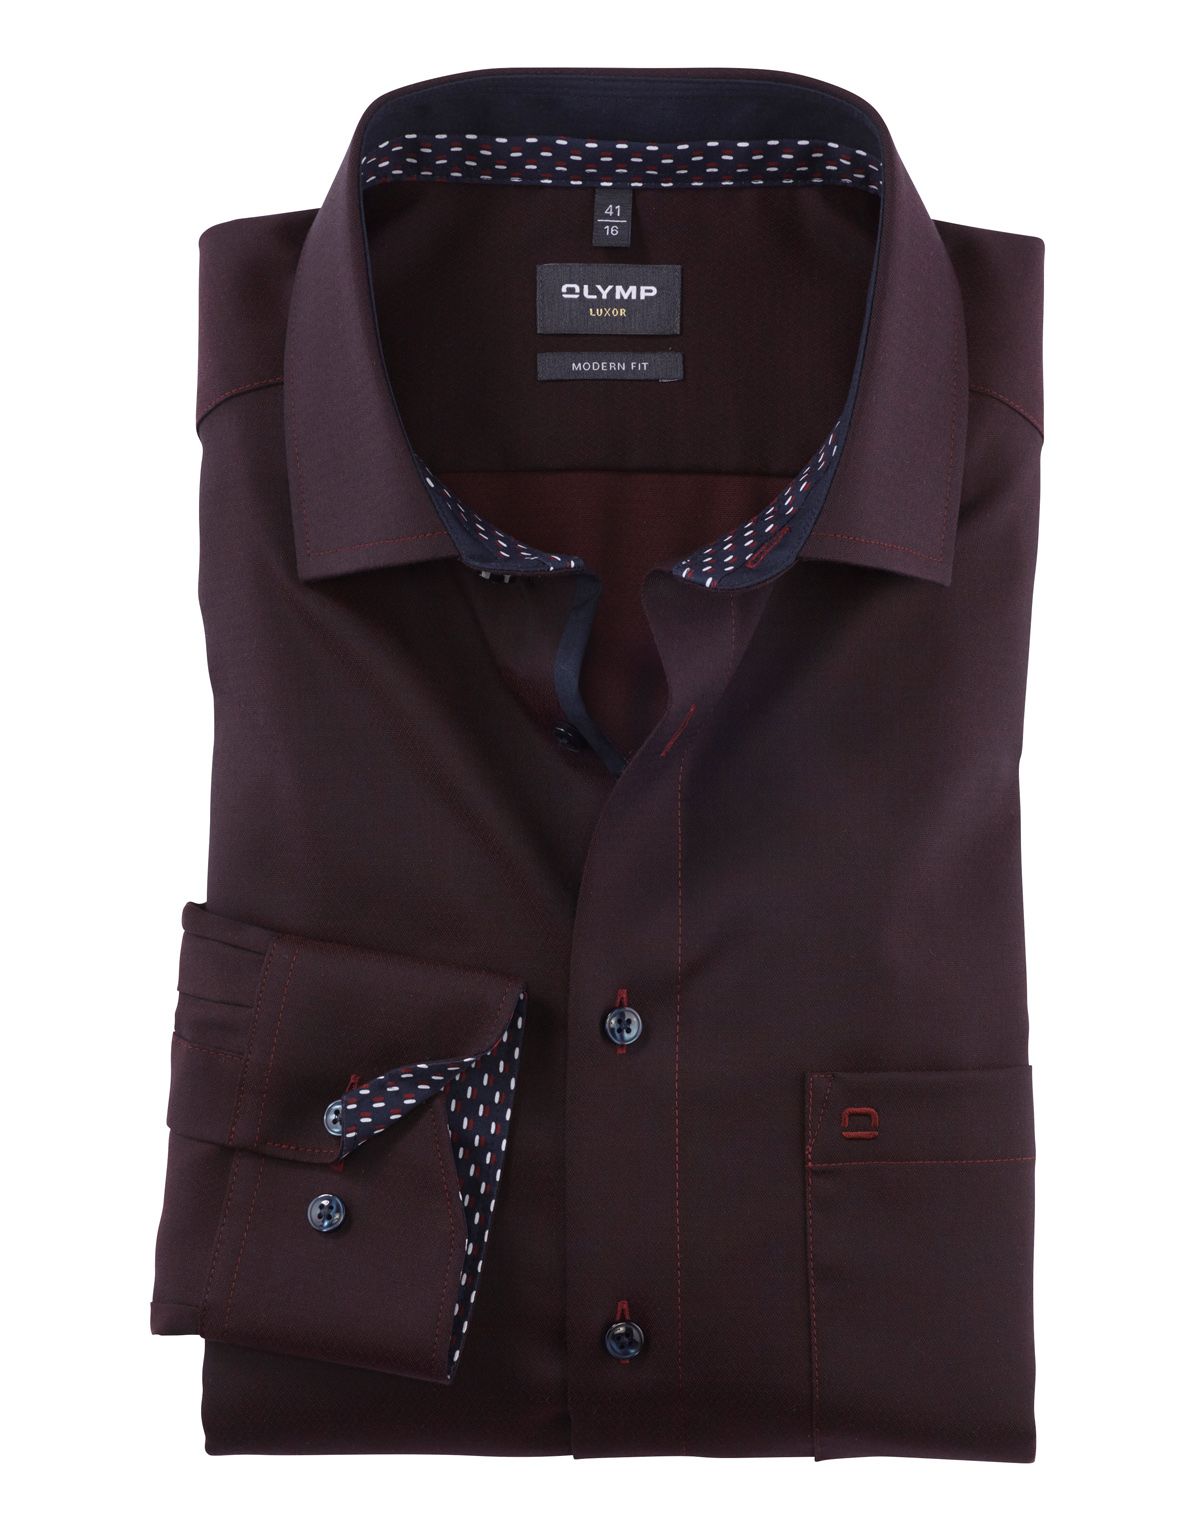 Рубашка мужская OLYMP Luxor, modern fit, фактурная ткань, рост до 176[Бордовый]